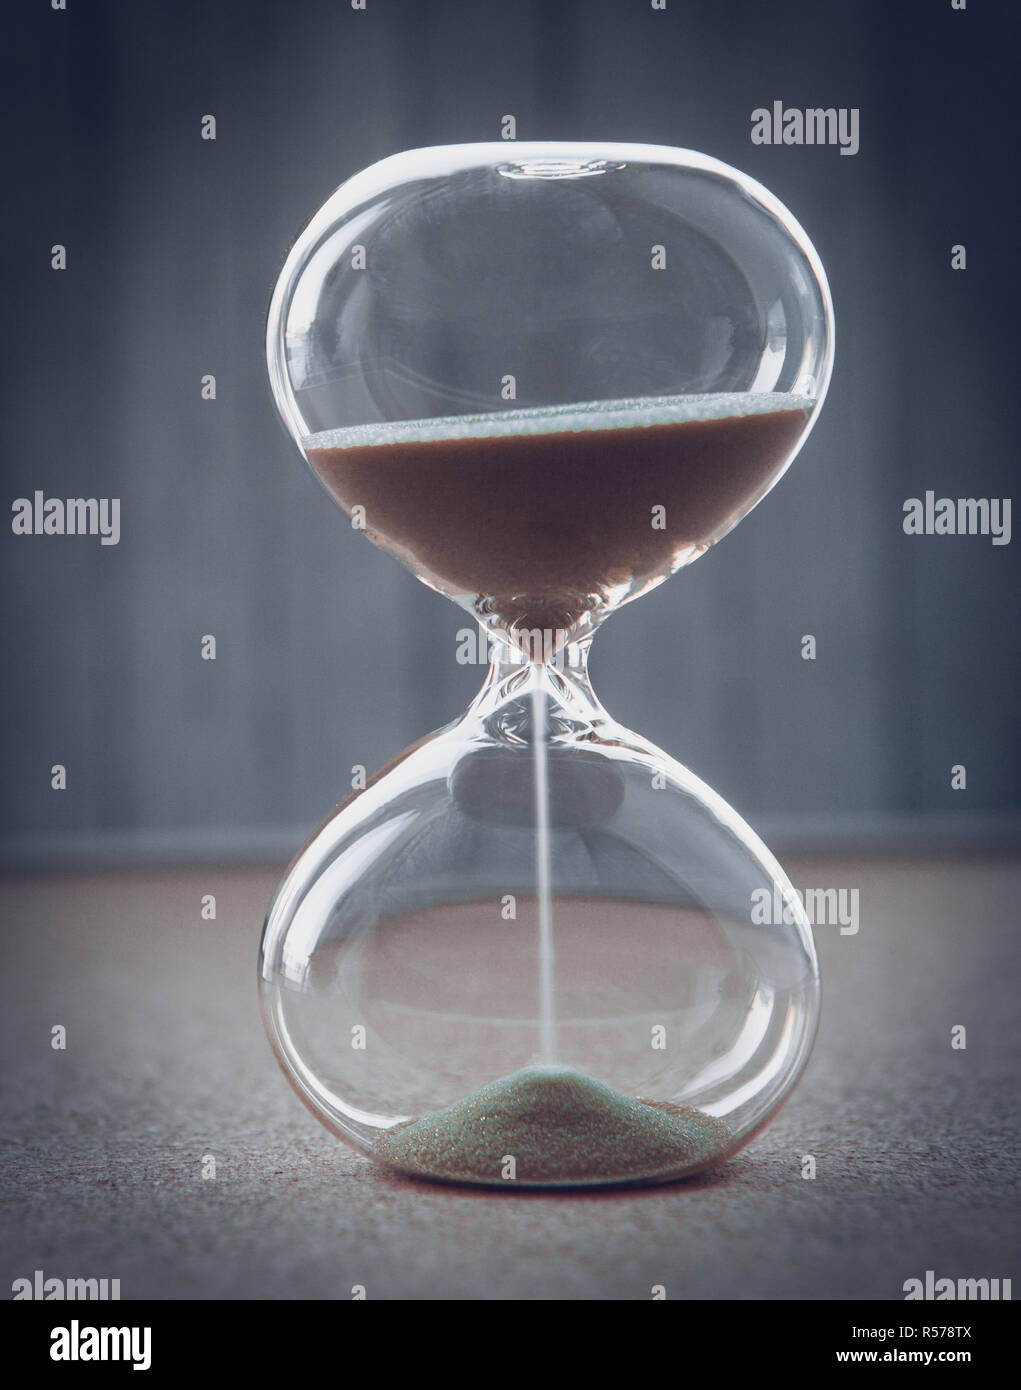 La mesure d'Hourglass passant du temps dans un compte à rebours jusqu'à une date limite, sur un arrière-plan flou with copy space Banque D'Images